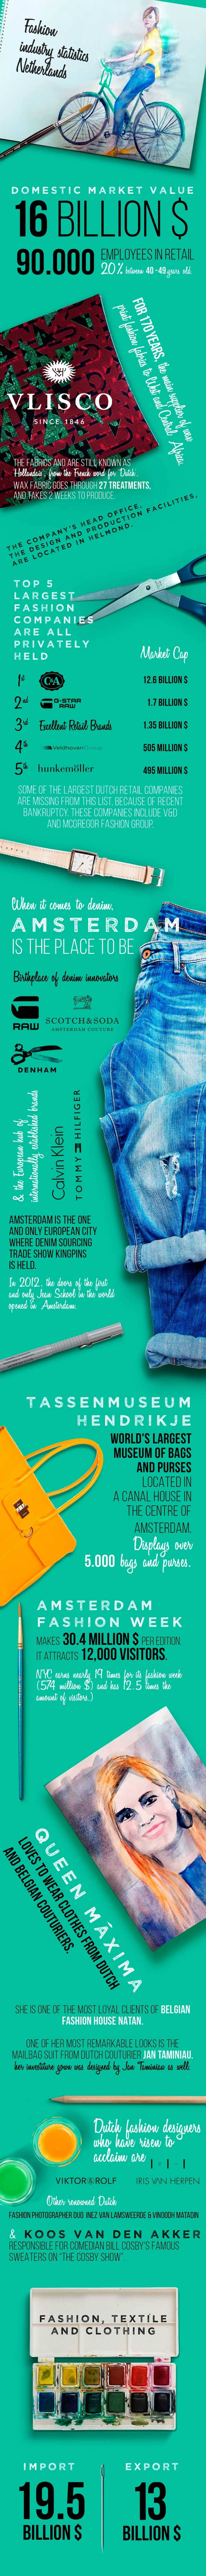 Statistiche sull'industria della moda parte 5: l'Olanda